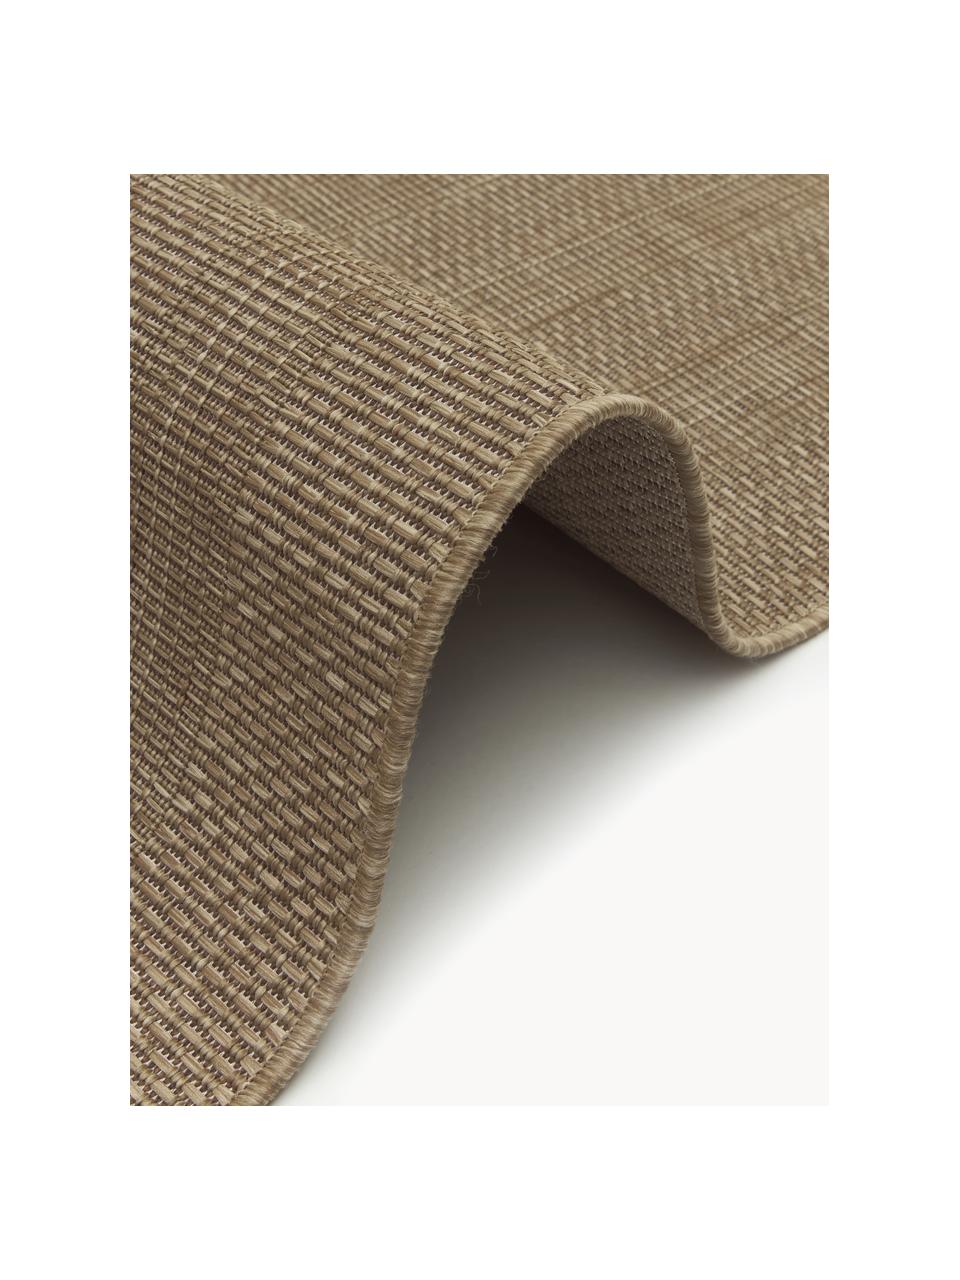 Interiérový/exteriérový koberec Liza, 100 % polypropylen, Hnědá, Š 160 cm, D 220 cm (velikost M)